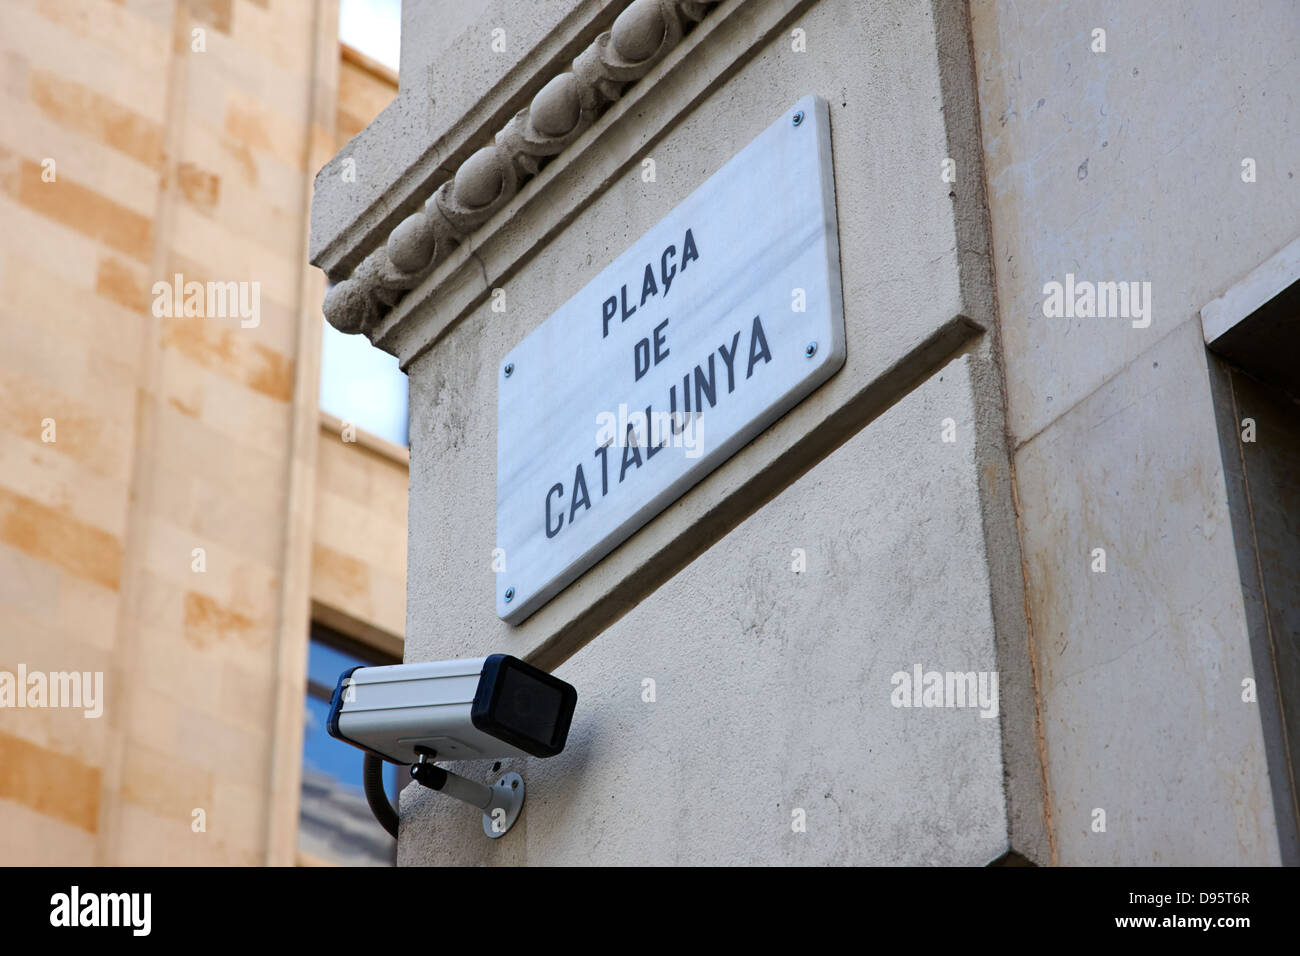 Cctv cámaras de seguridad en la plaça de Catalunya, Barcelona, Cataluña, España Foto de stock